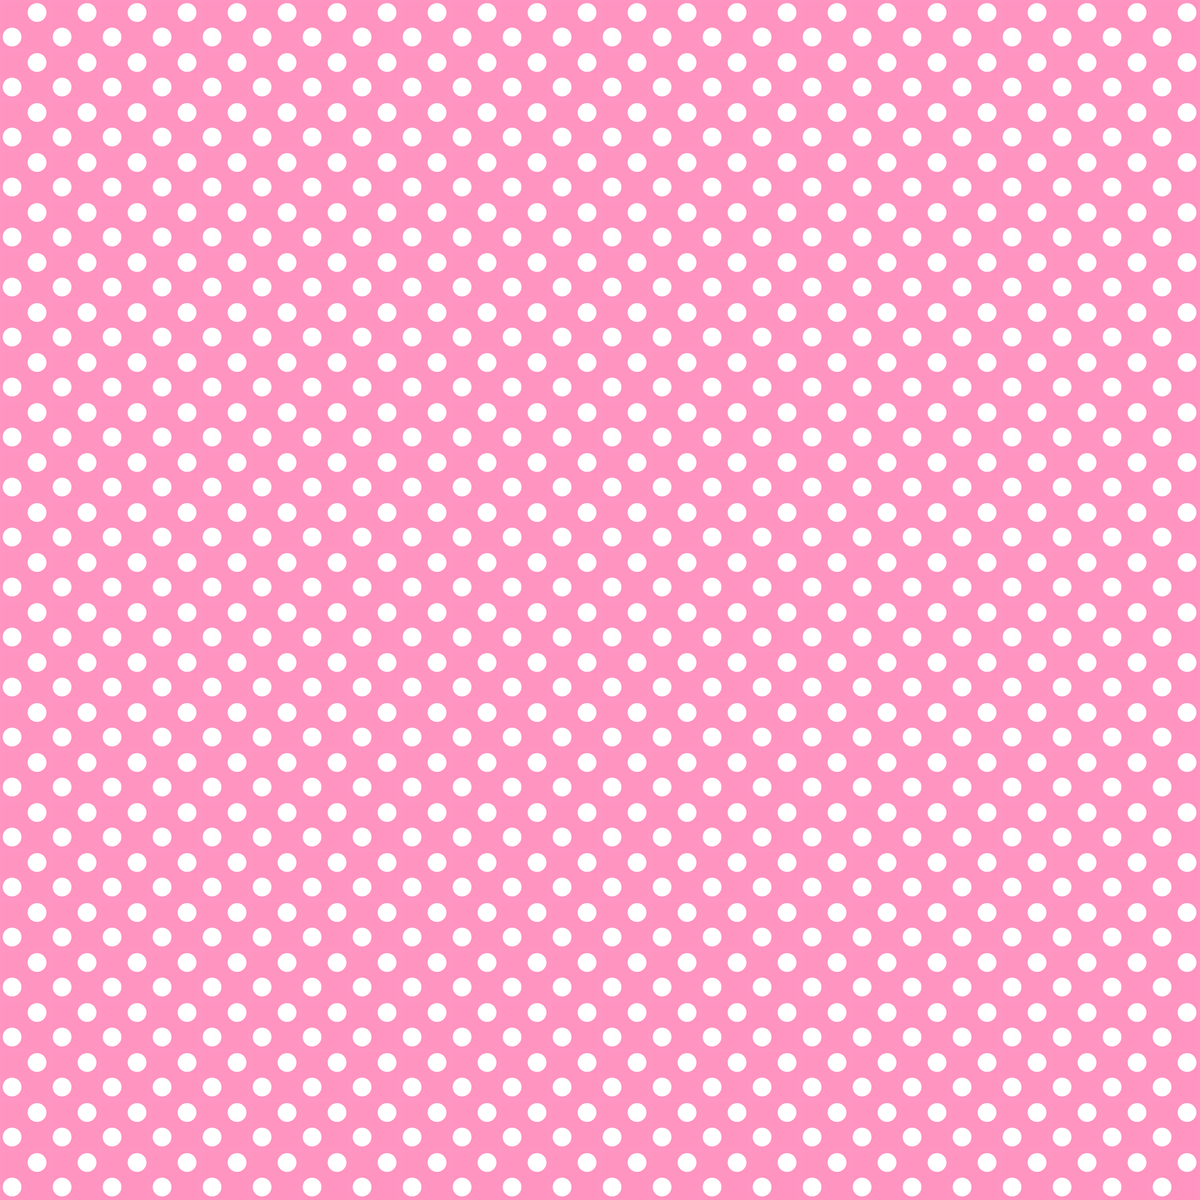 6 Best Images of Light Pink Polka Dot Paper Printable - Pink Polka Dot ...